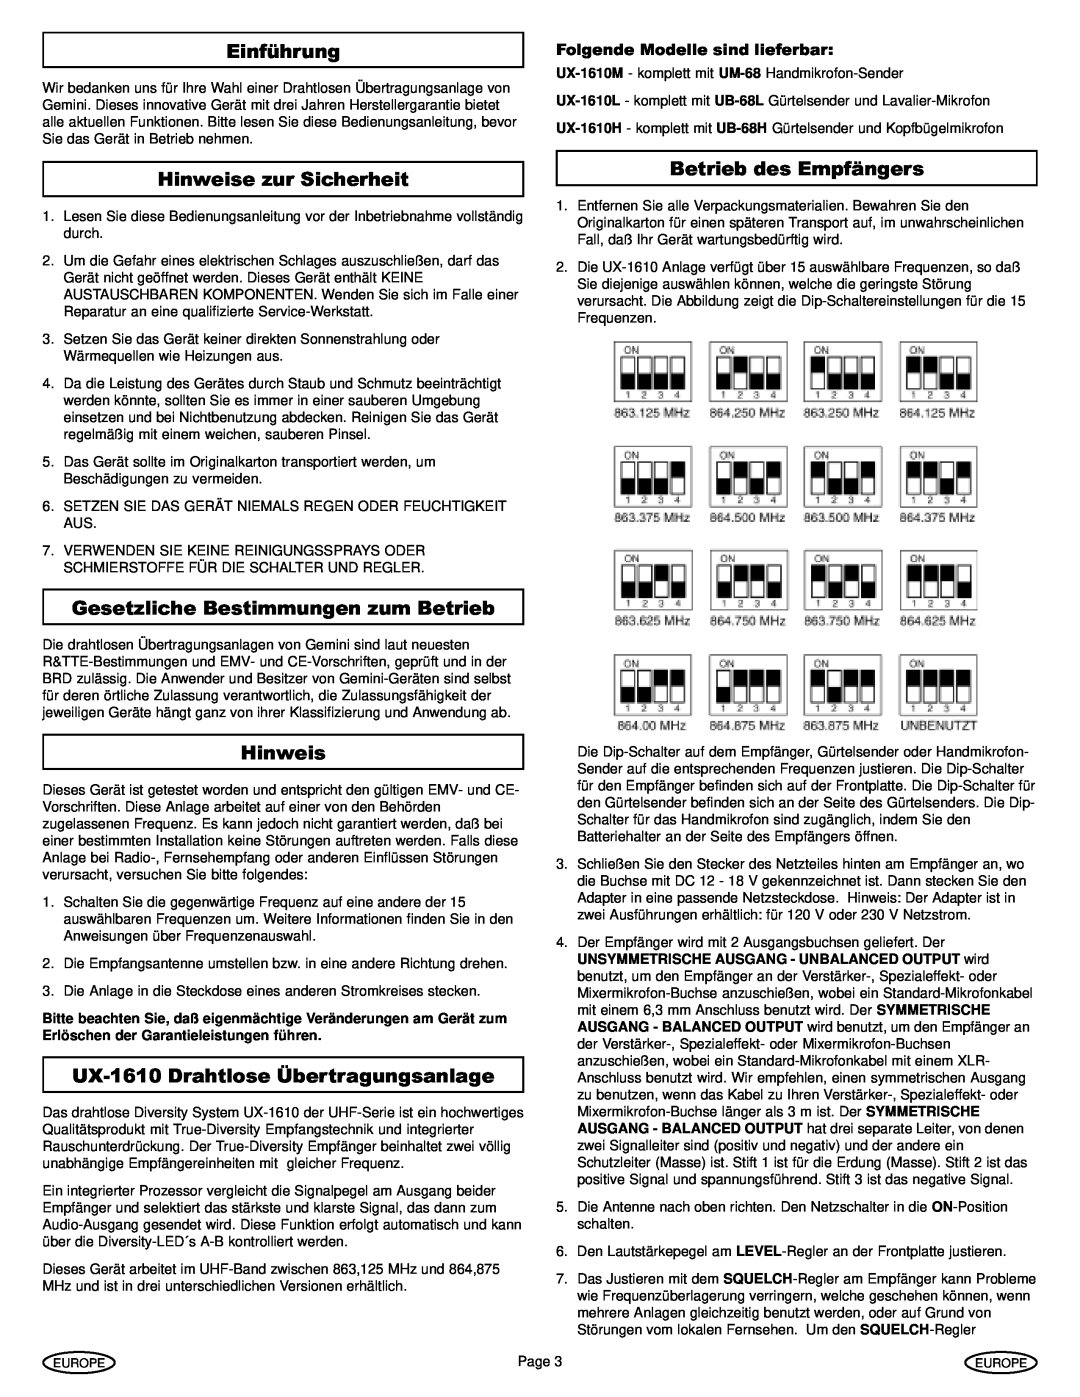 Gemini UX-1610 manual Einführung, Hinweise zur Sicherheit, Betrieb des Empfängers, Gesetzliche Bestimmungen zum Betrieb 